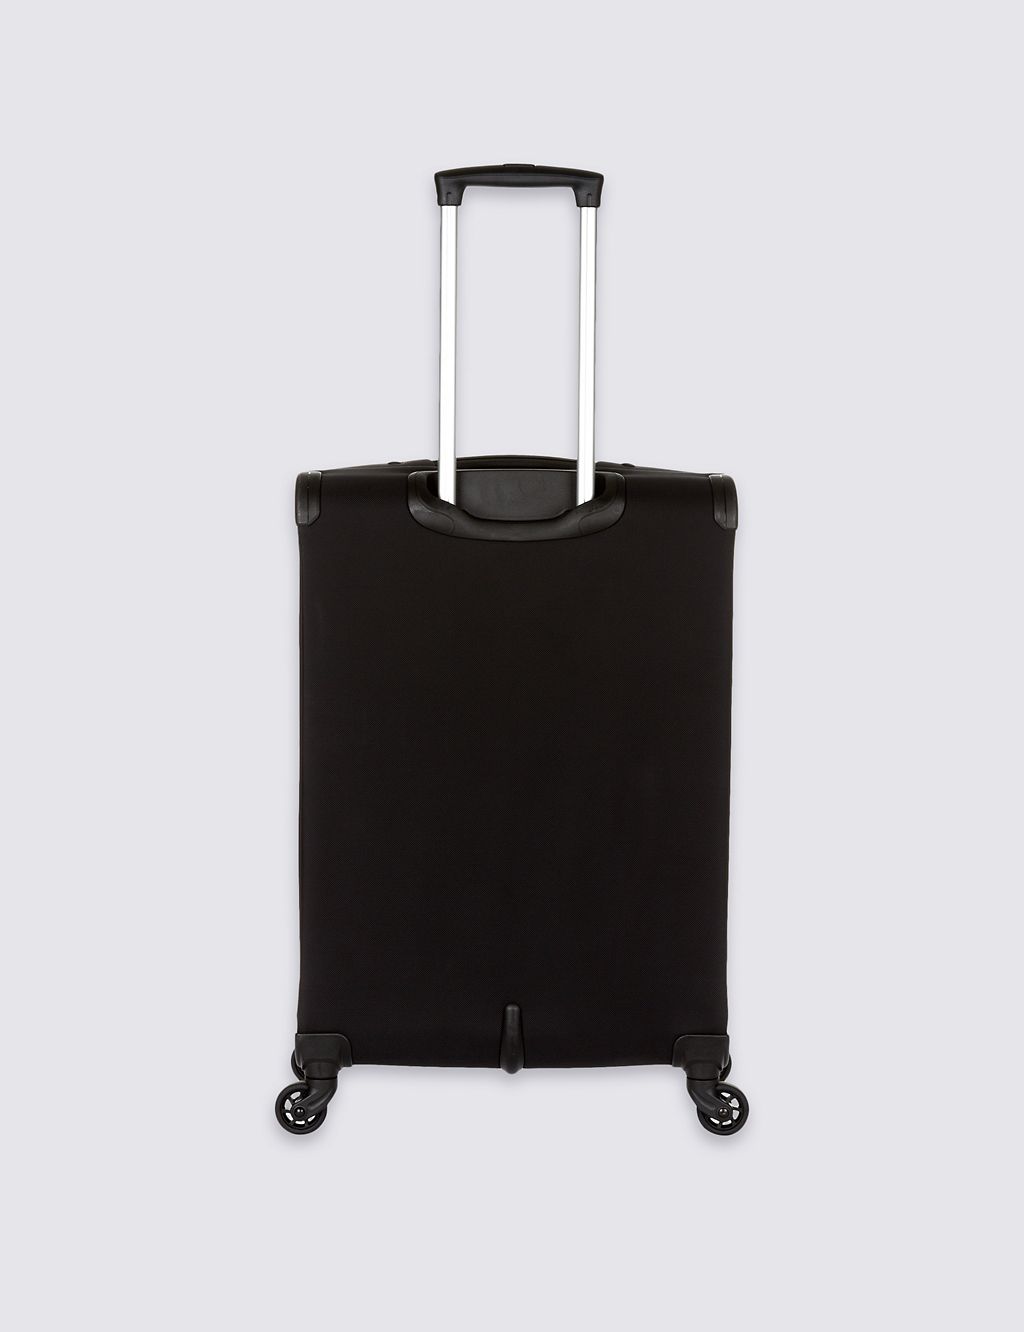 Delta 4 Wheel Medium Suitcase 1 of 6